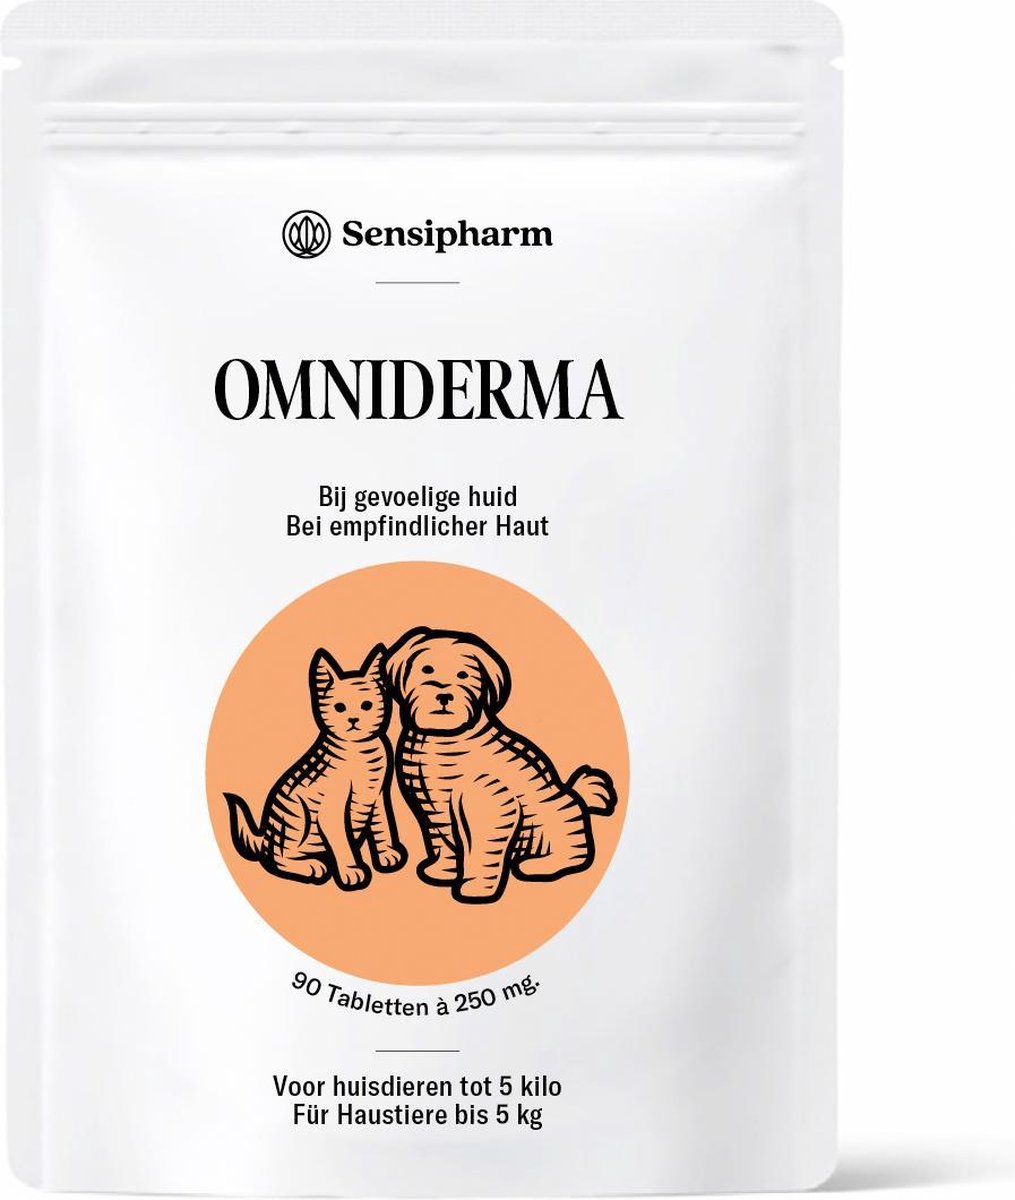 Sensipharm Omniderma voor Kat, Hondje, Cavia, Konijn - Voedingssupplement voor Huid en Vacht, bij Jeuk, Eczeem & Hotspot - 90 Tabletten à 250 mg - Sensipharm